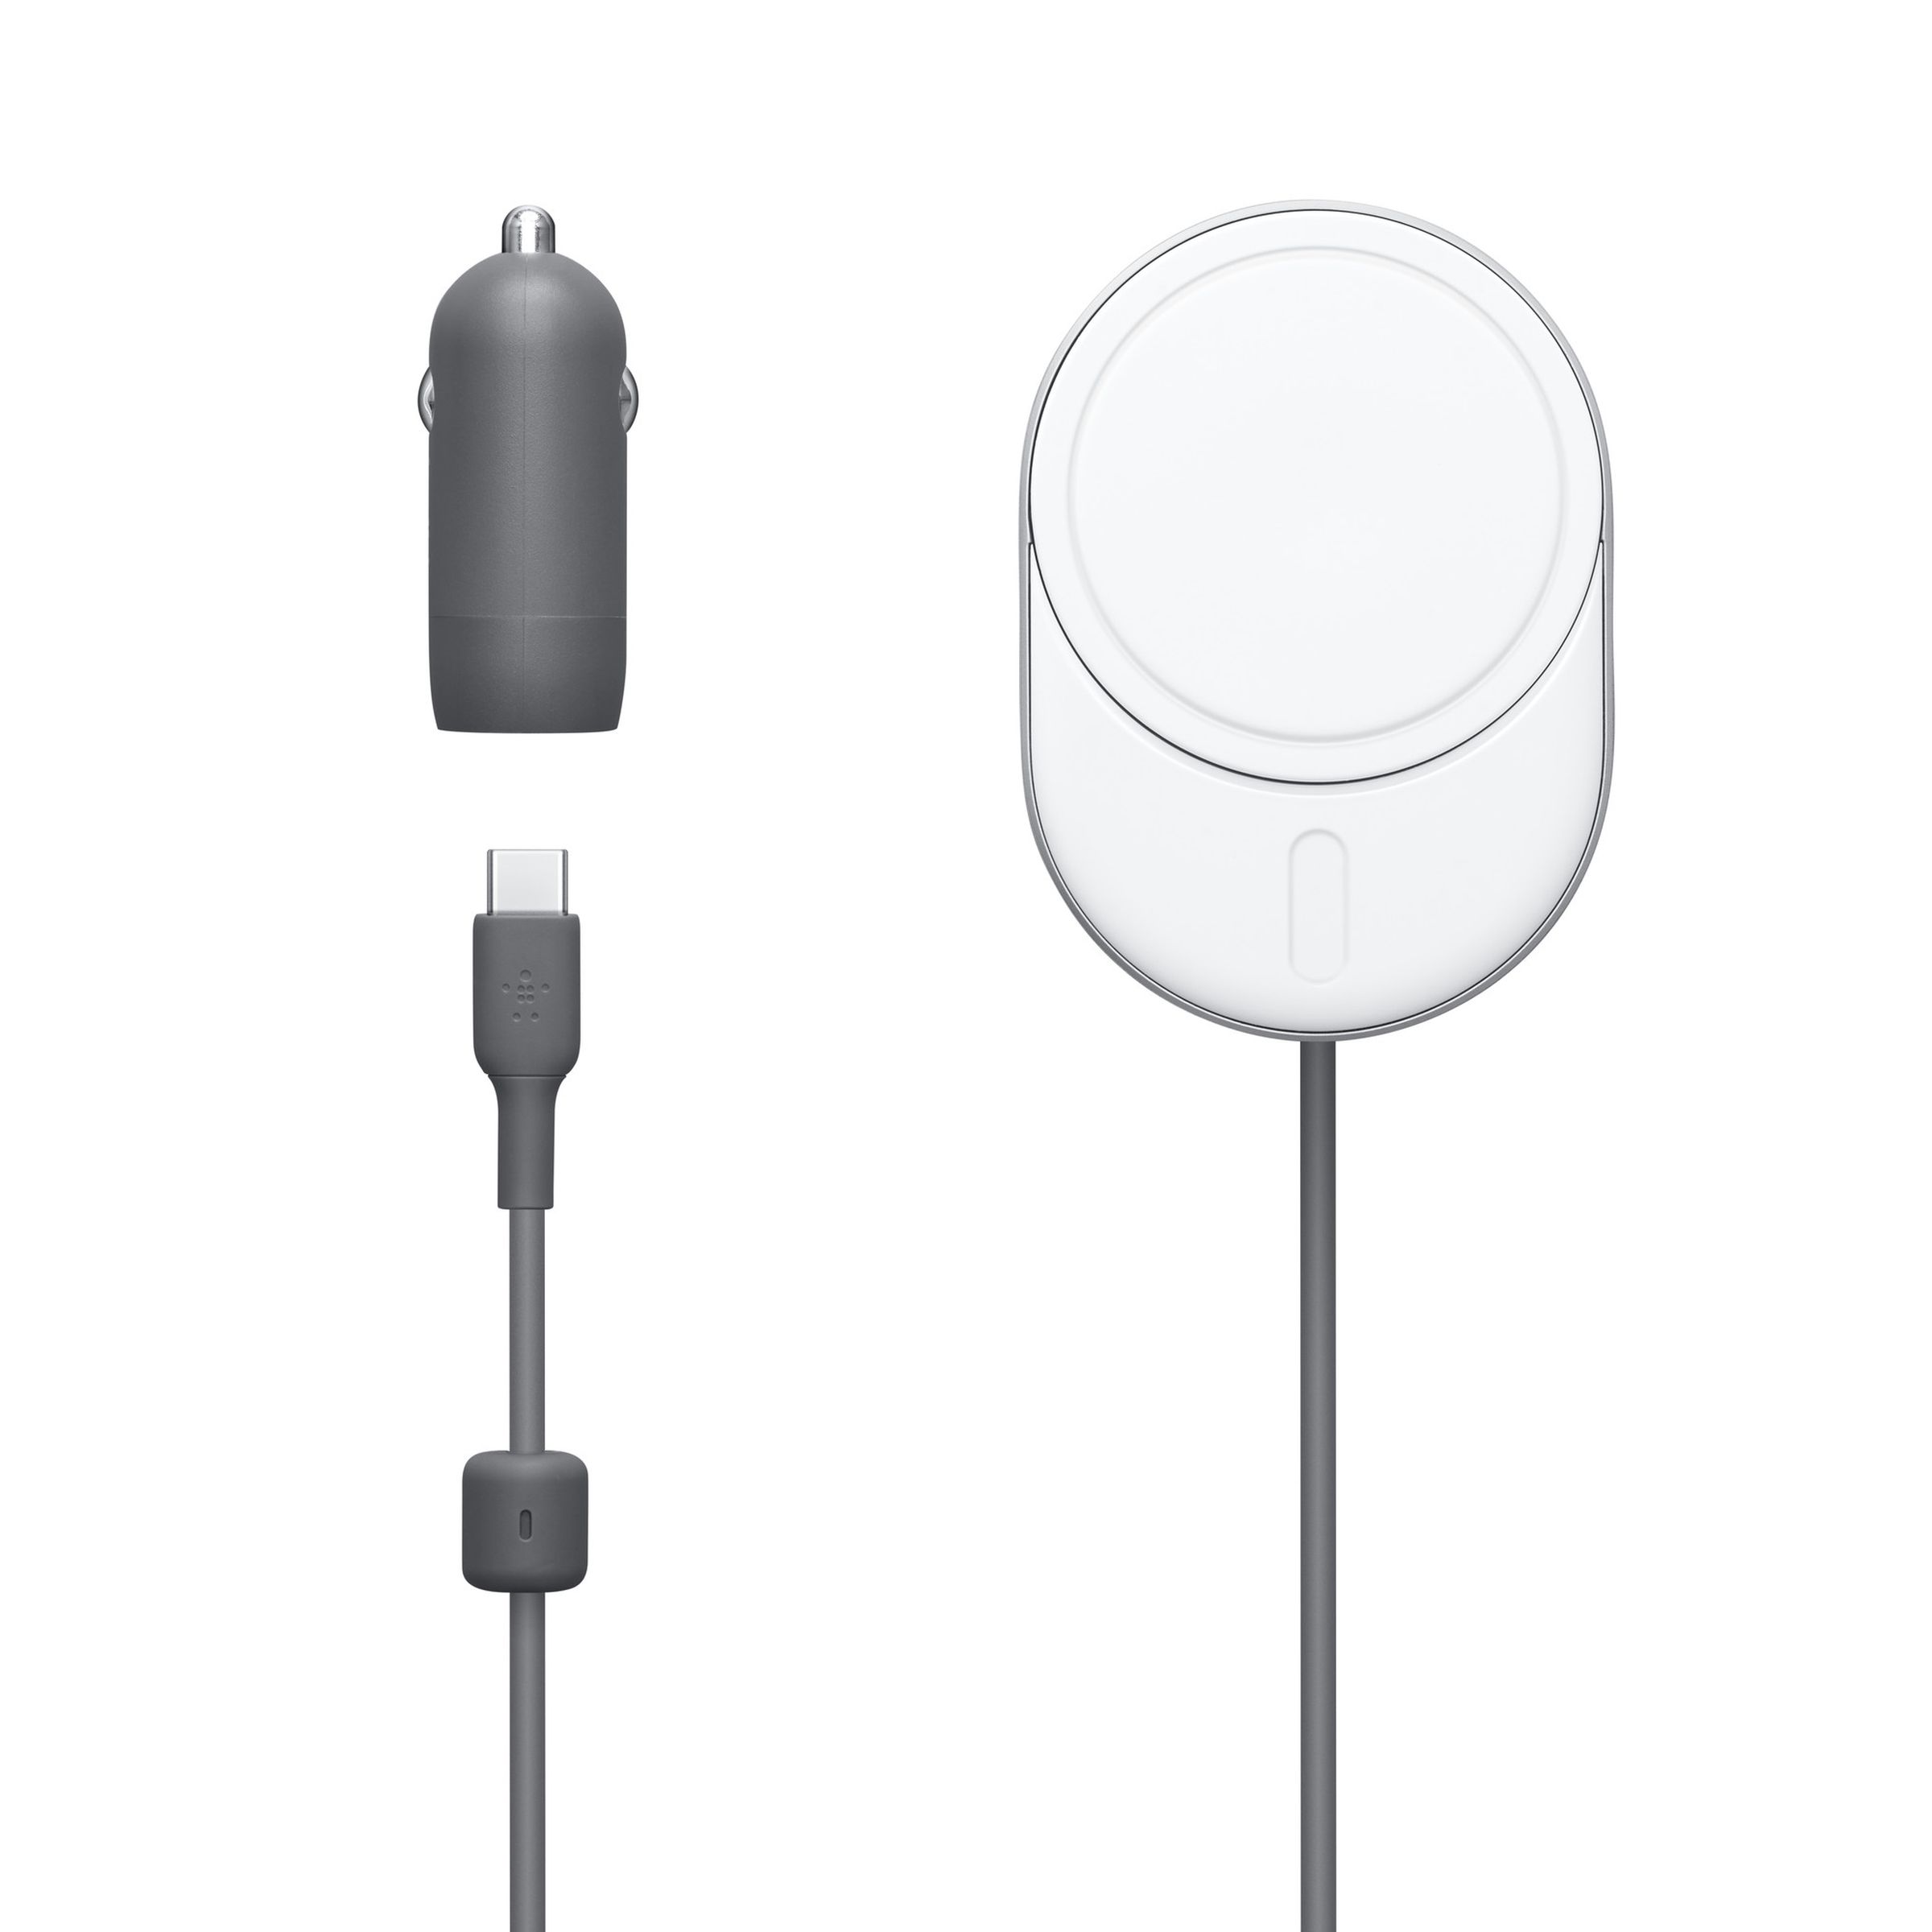 Belkin şarj pedinin, entegre USB-C kablosunun ve araç şarj adaptörünün resmi.